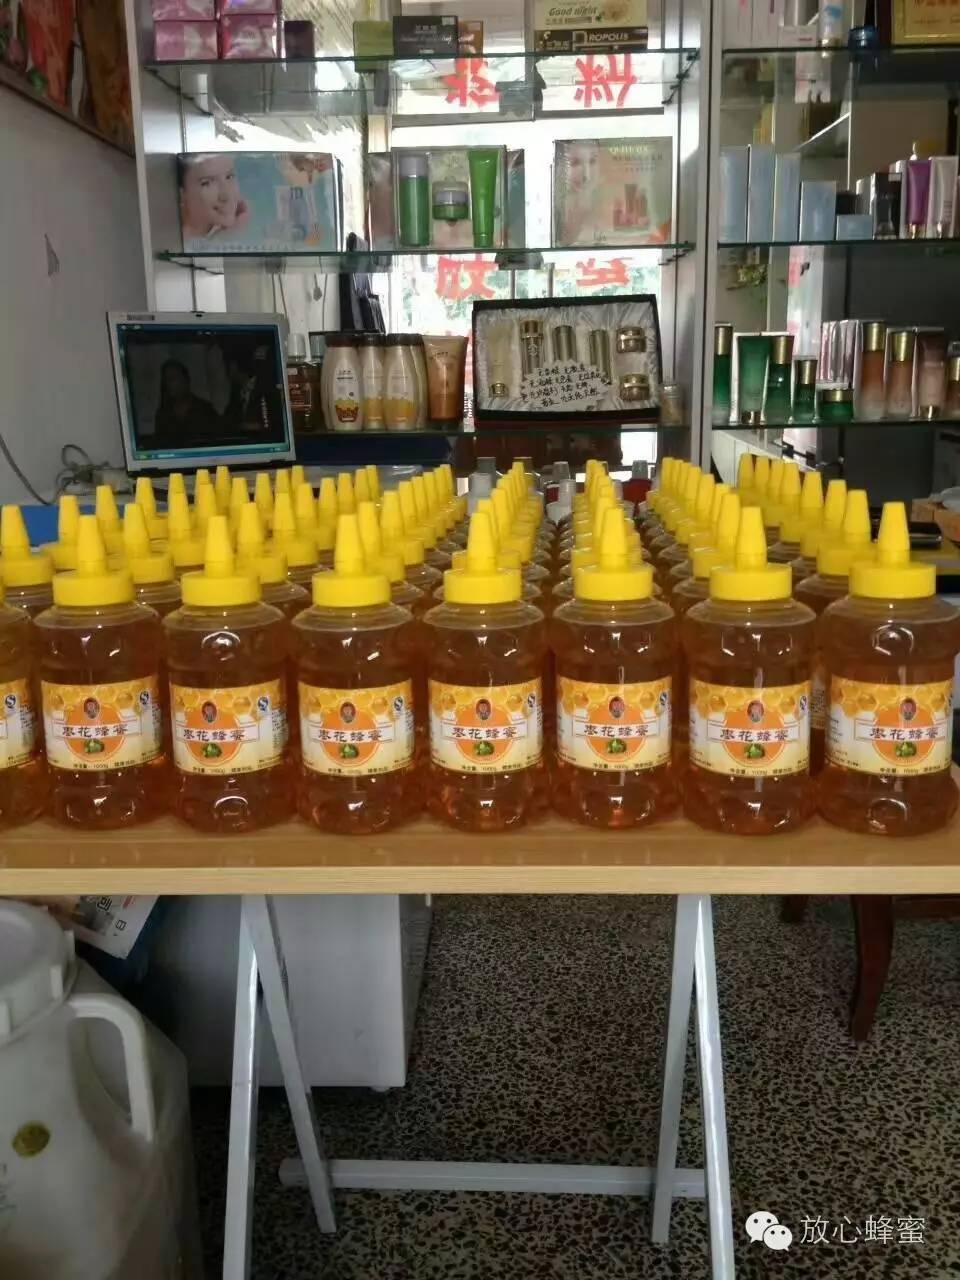 夏天喝蜂蜜的好处 纯蜂蜜 欧舒丹蜂蜜妈妈香皂怎么样 蜂蜜的成分 小森林蜂蜜